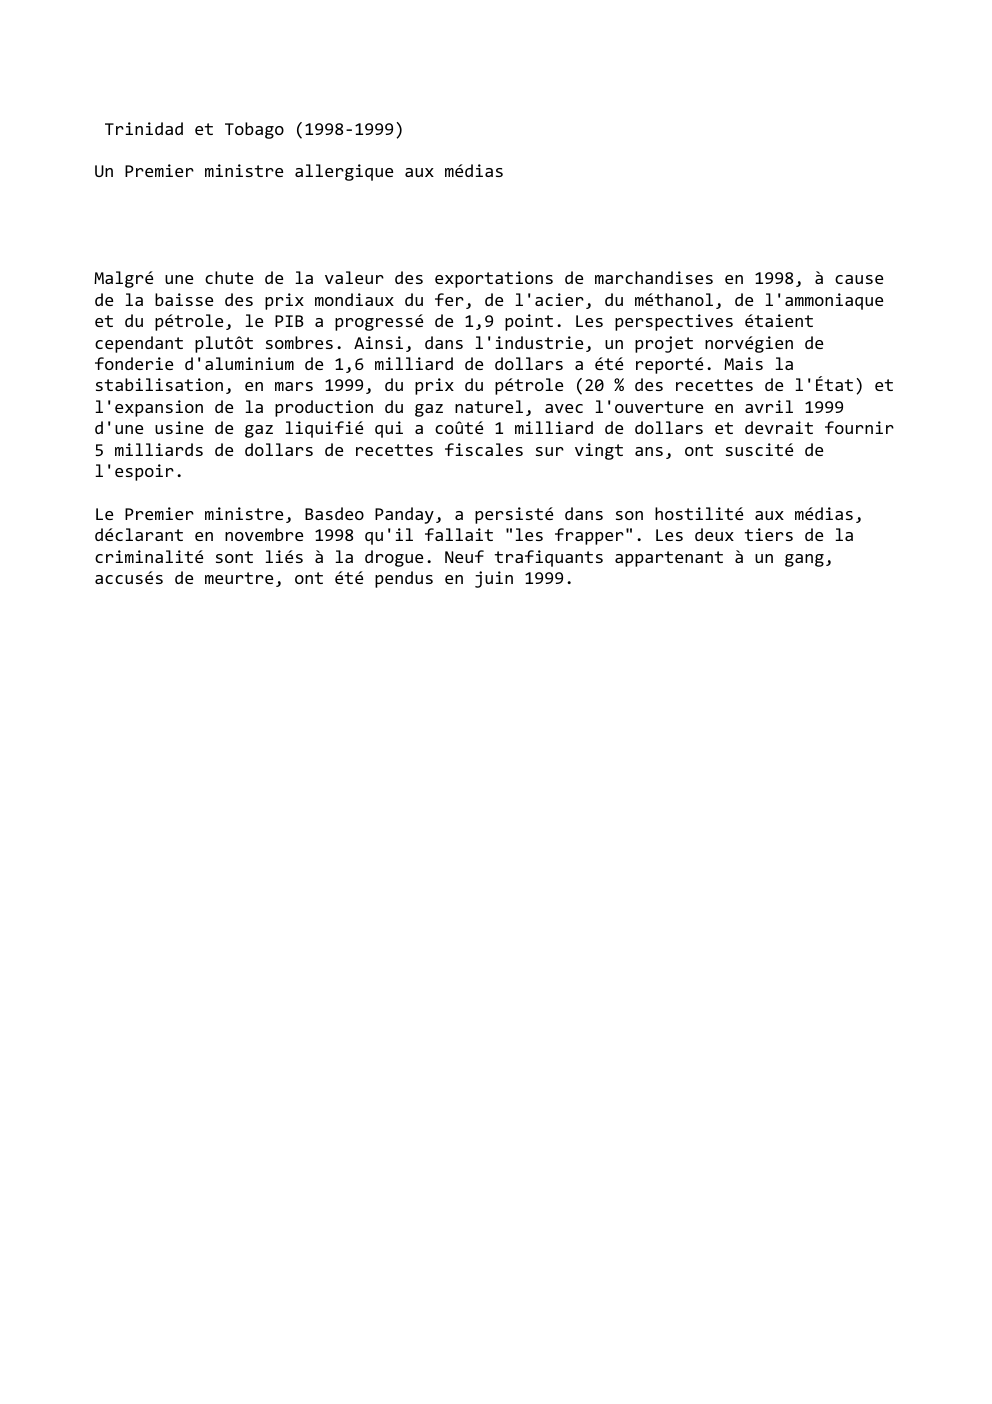 Prévisualisation du document Trinidad et Tobago (1998-1999)
Un Premier ministre allergique aux médias

Malgré une chute de la valeur des exportations de marchandises...